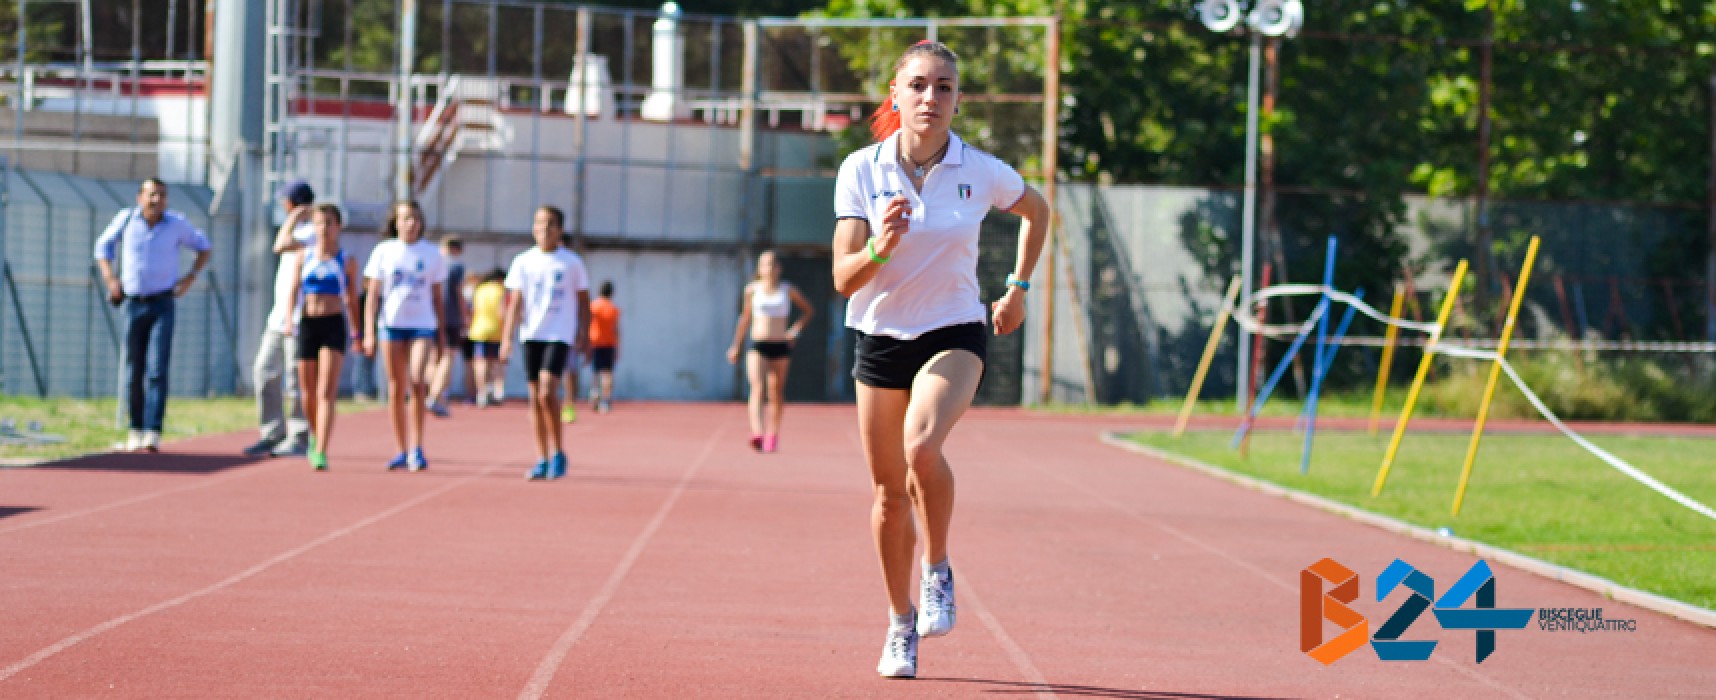 Campionati Italiani Promesse, Lucia Pasquale in finale nei 400 metri